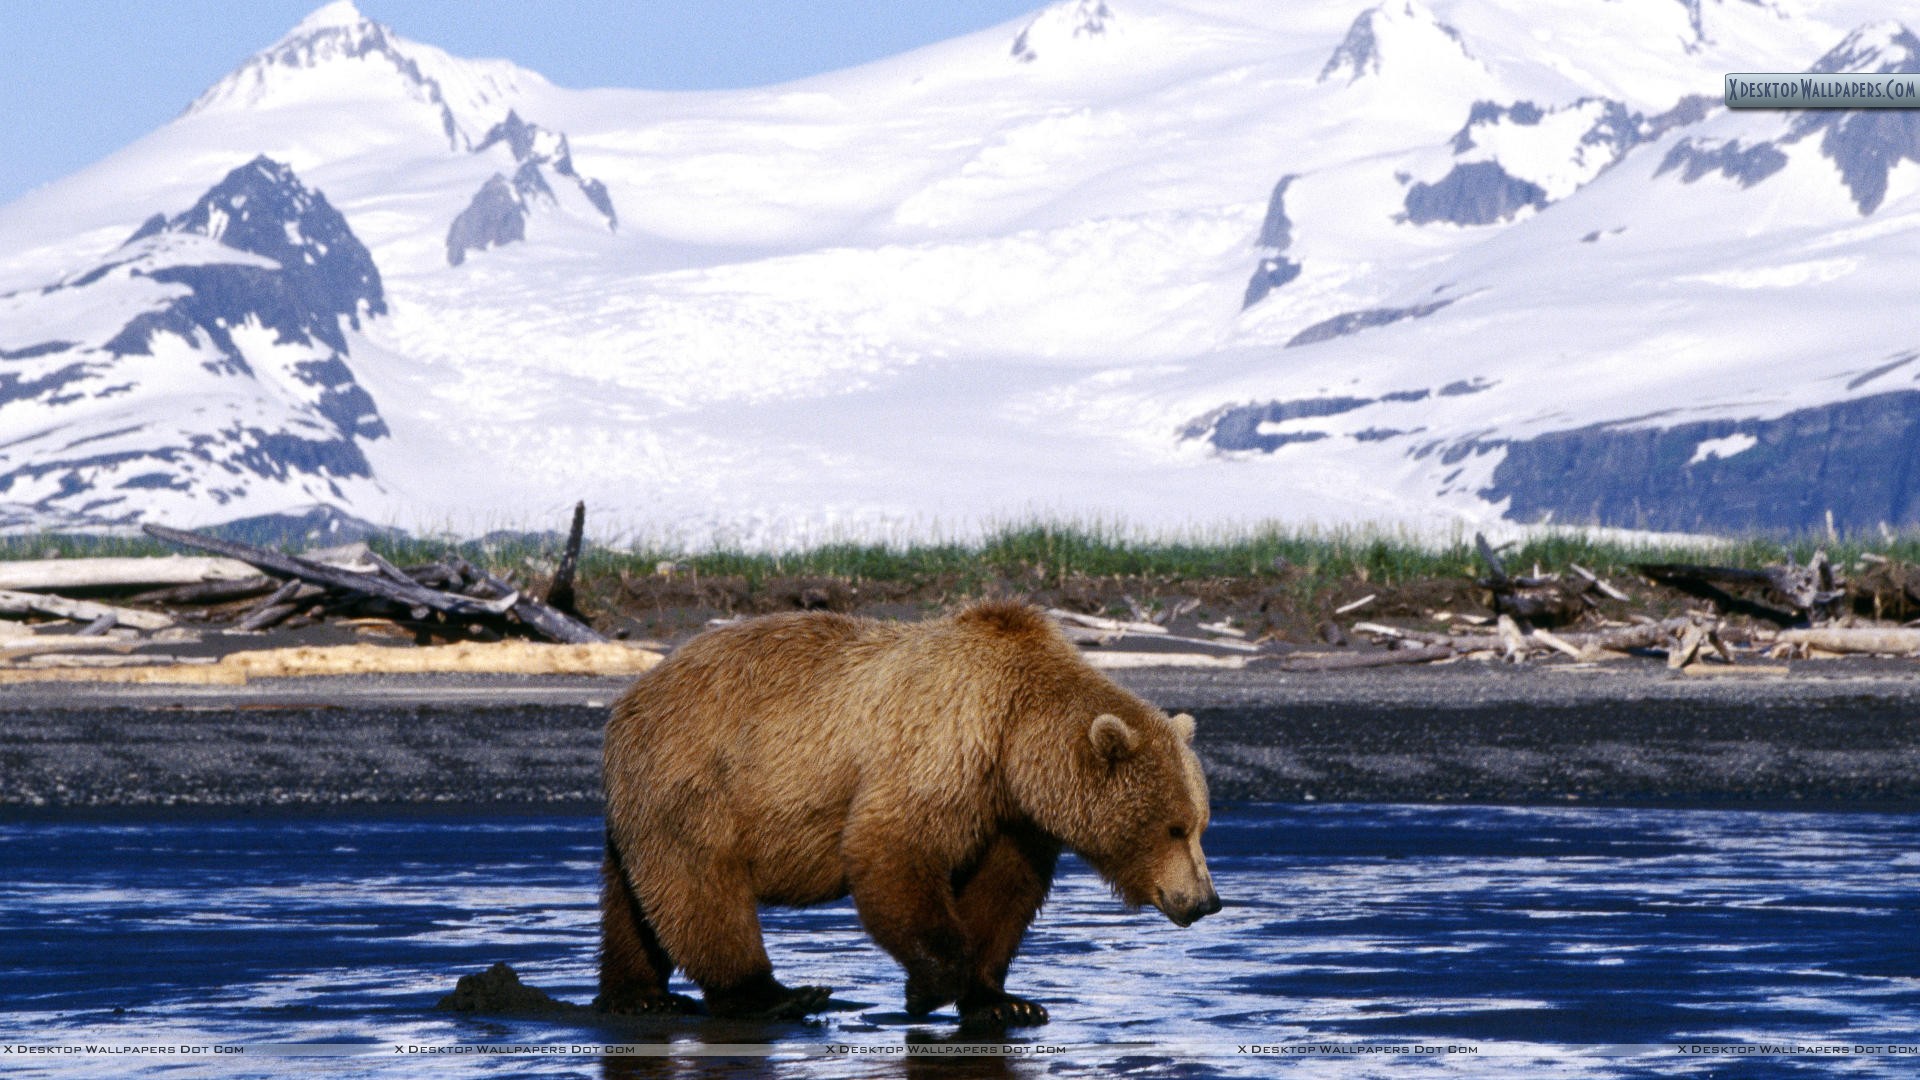 곰 벽지,회색 곰,자연 경관,야생 동물,갈색 곰,곰